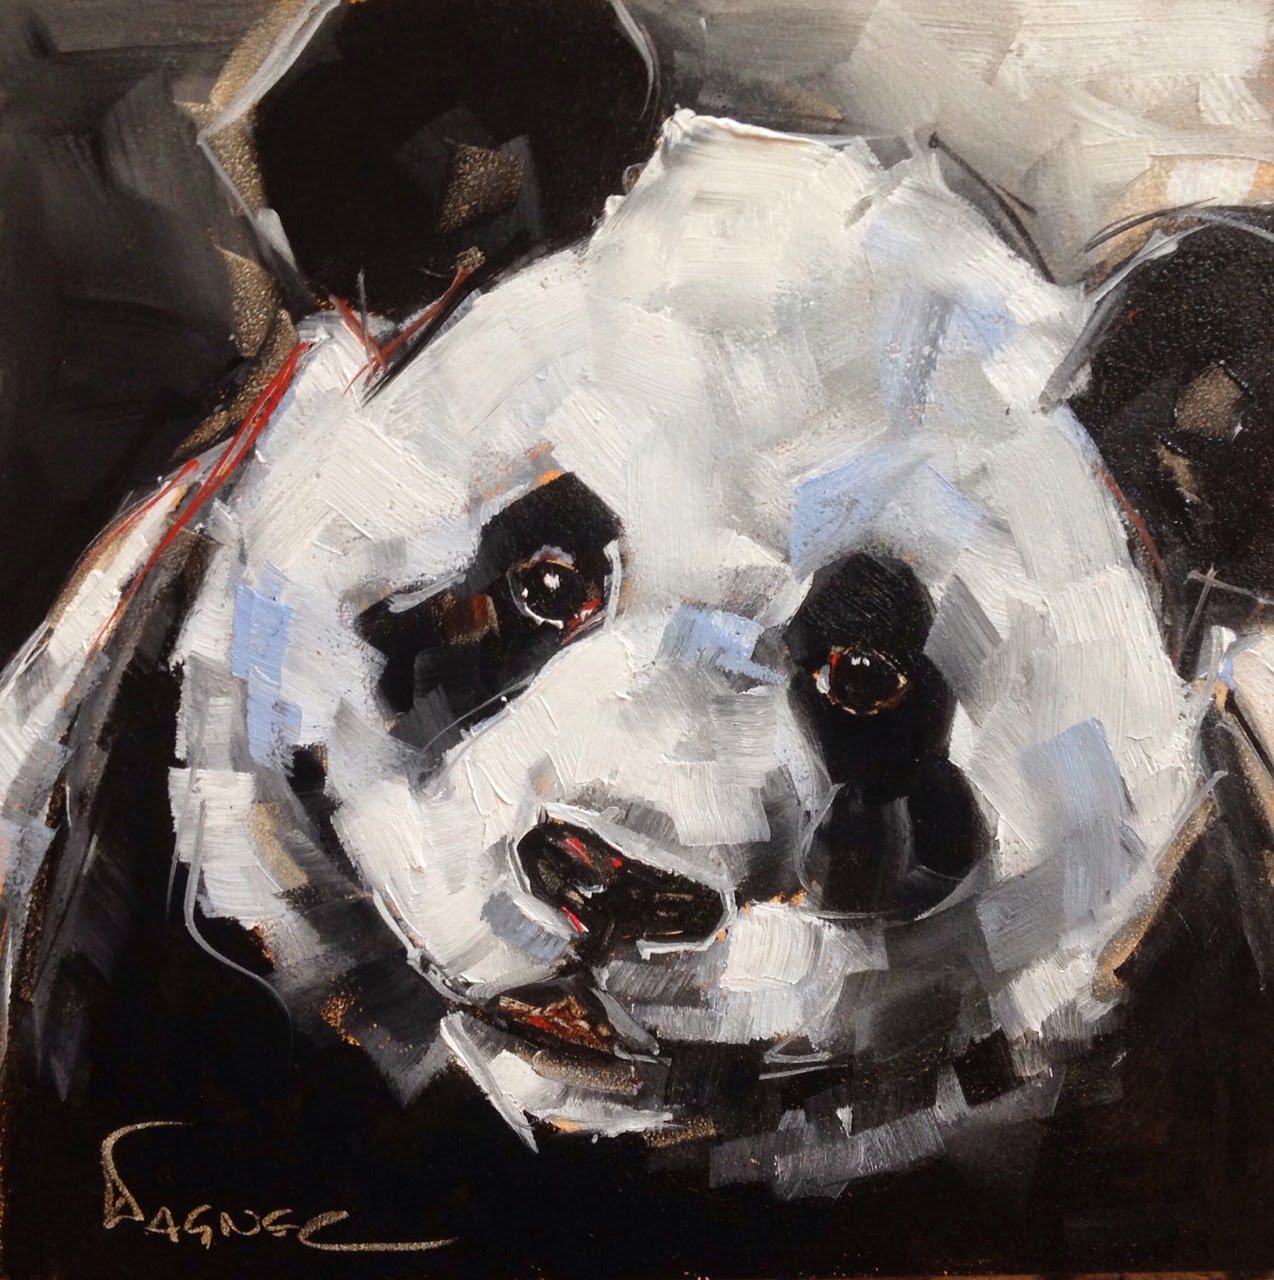 Панда живопись